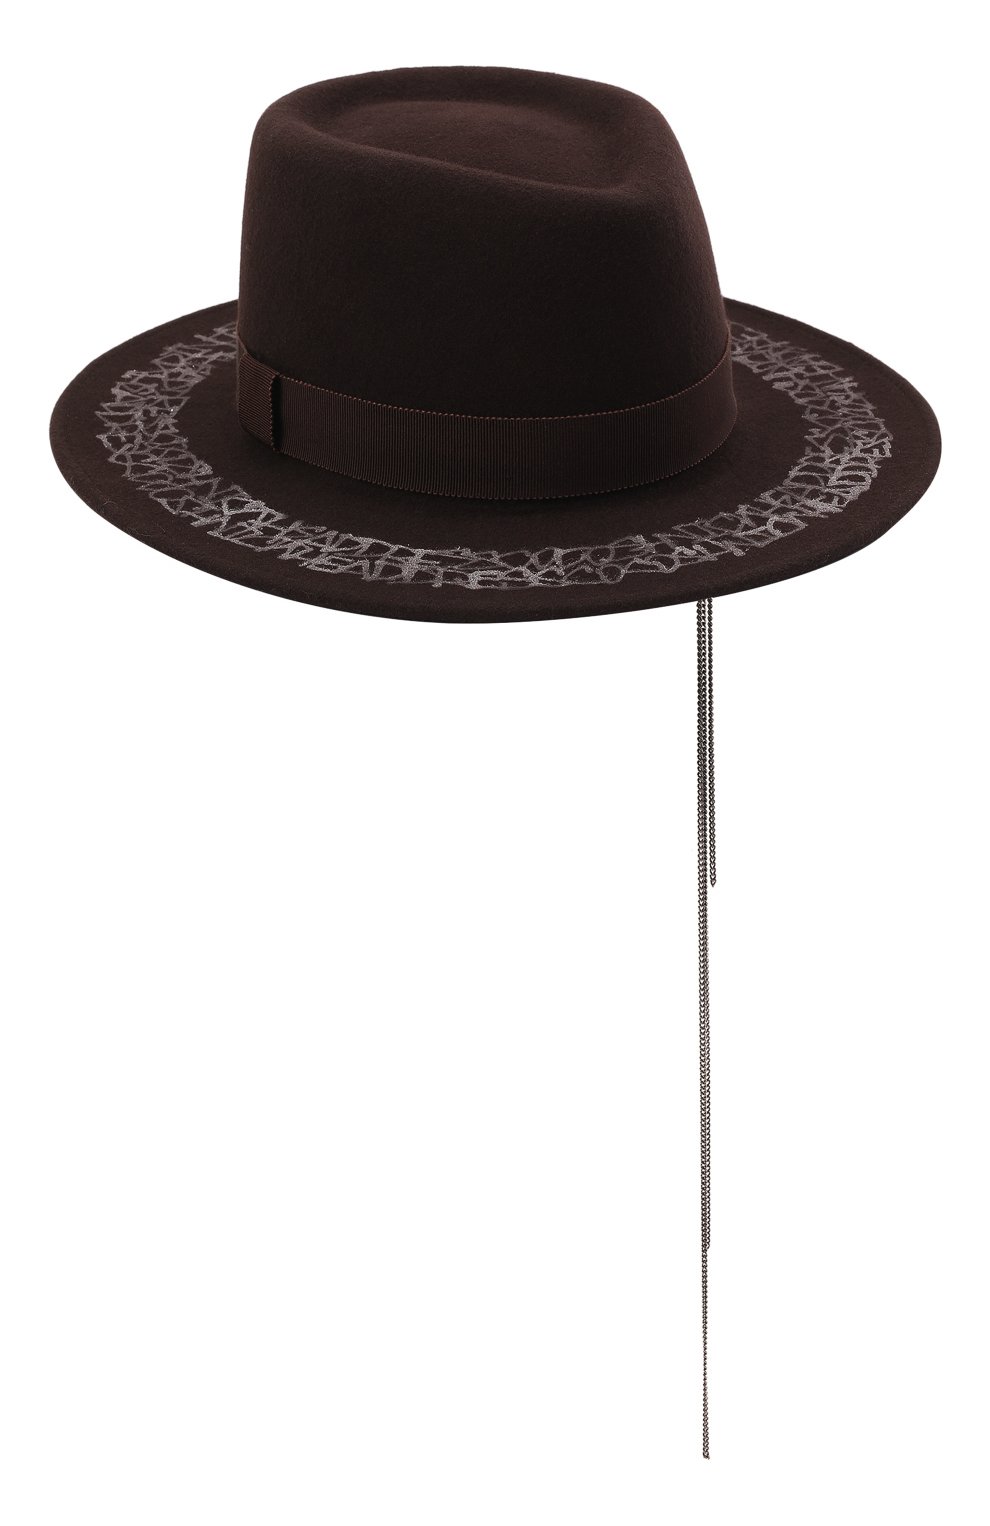 Женская шляпа drop brown COCOSHNICK HEADDRESS коричневого цвета, арт. dropbrown | Фото 1 (Материал: Текстиль, Шерсть)